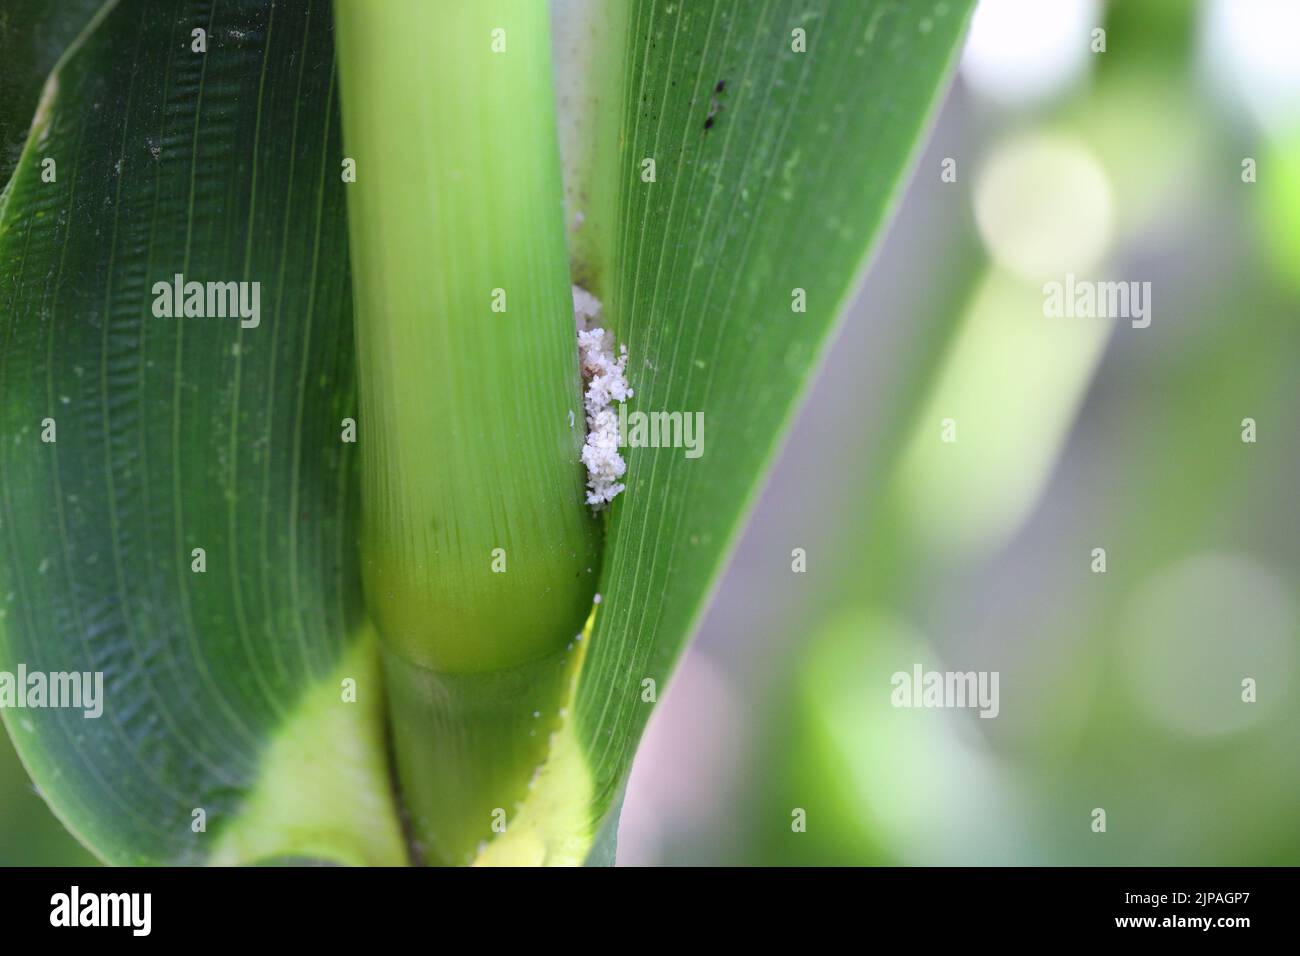 Mais, Maispflanze, die durch die Raupe des europäischen Maisbohrers (Ostrinia nubilalis) beschädigt wurde. Stockfoto